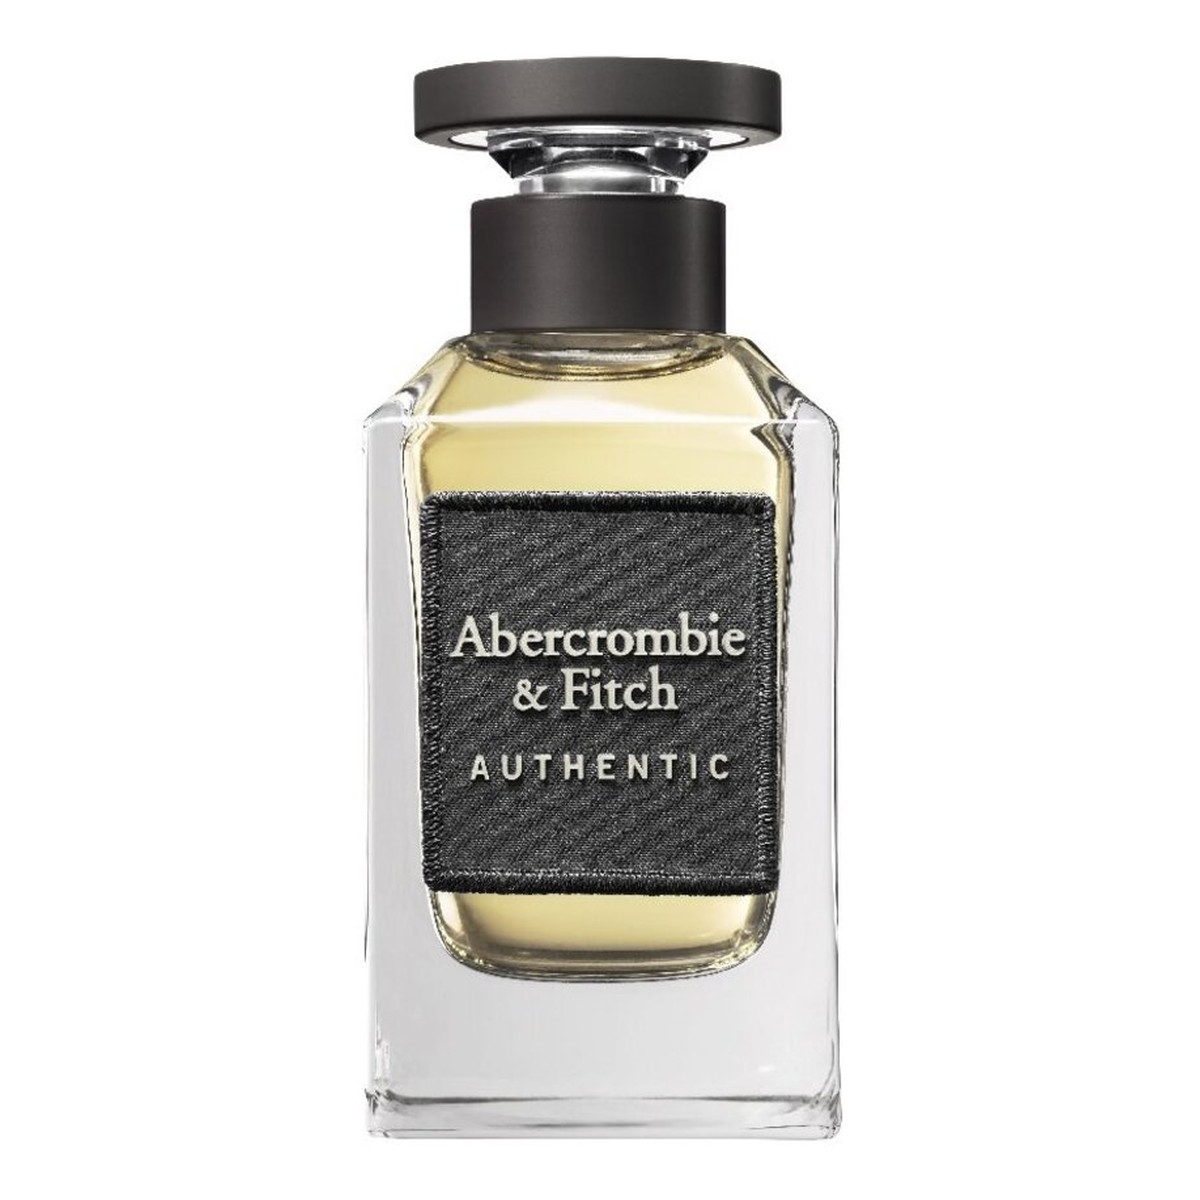 Abercrombie & Fitch Authentic Man woda toaletowa 100ml